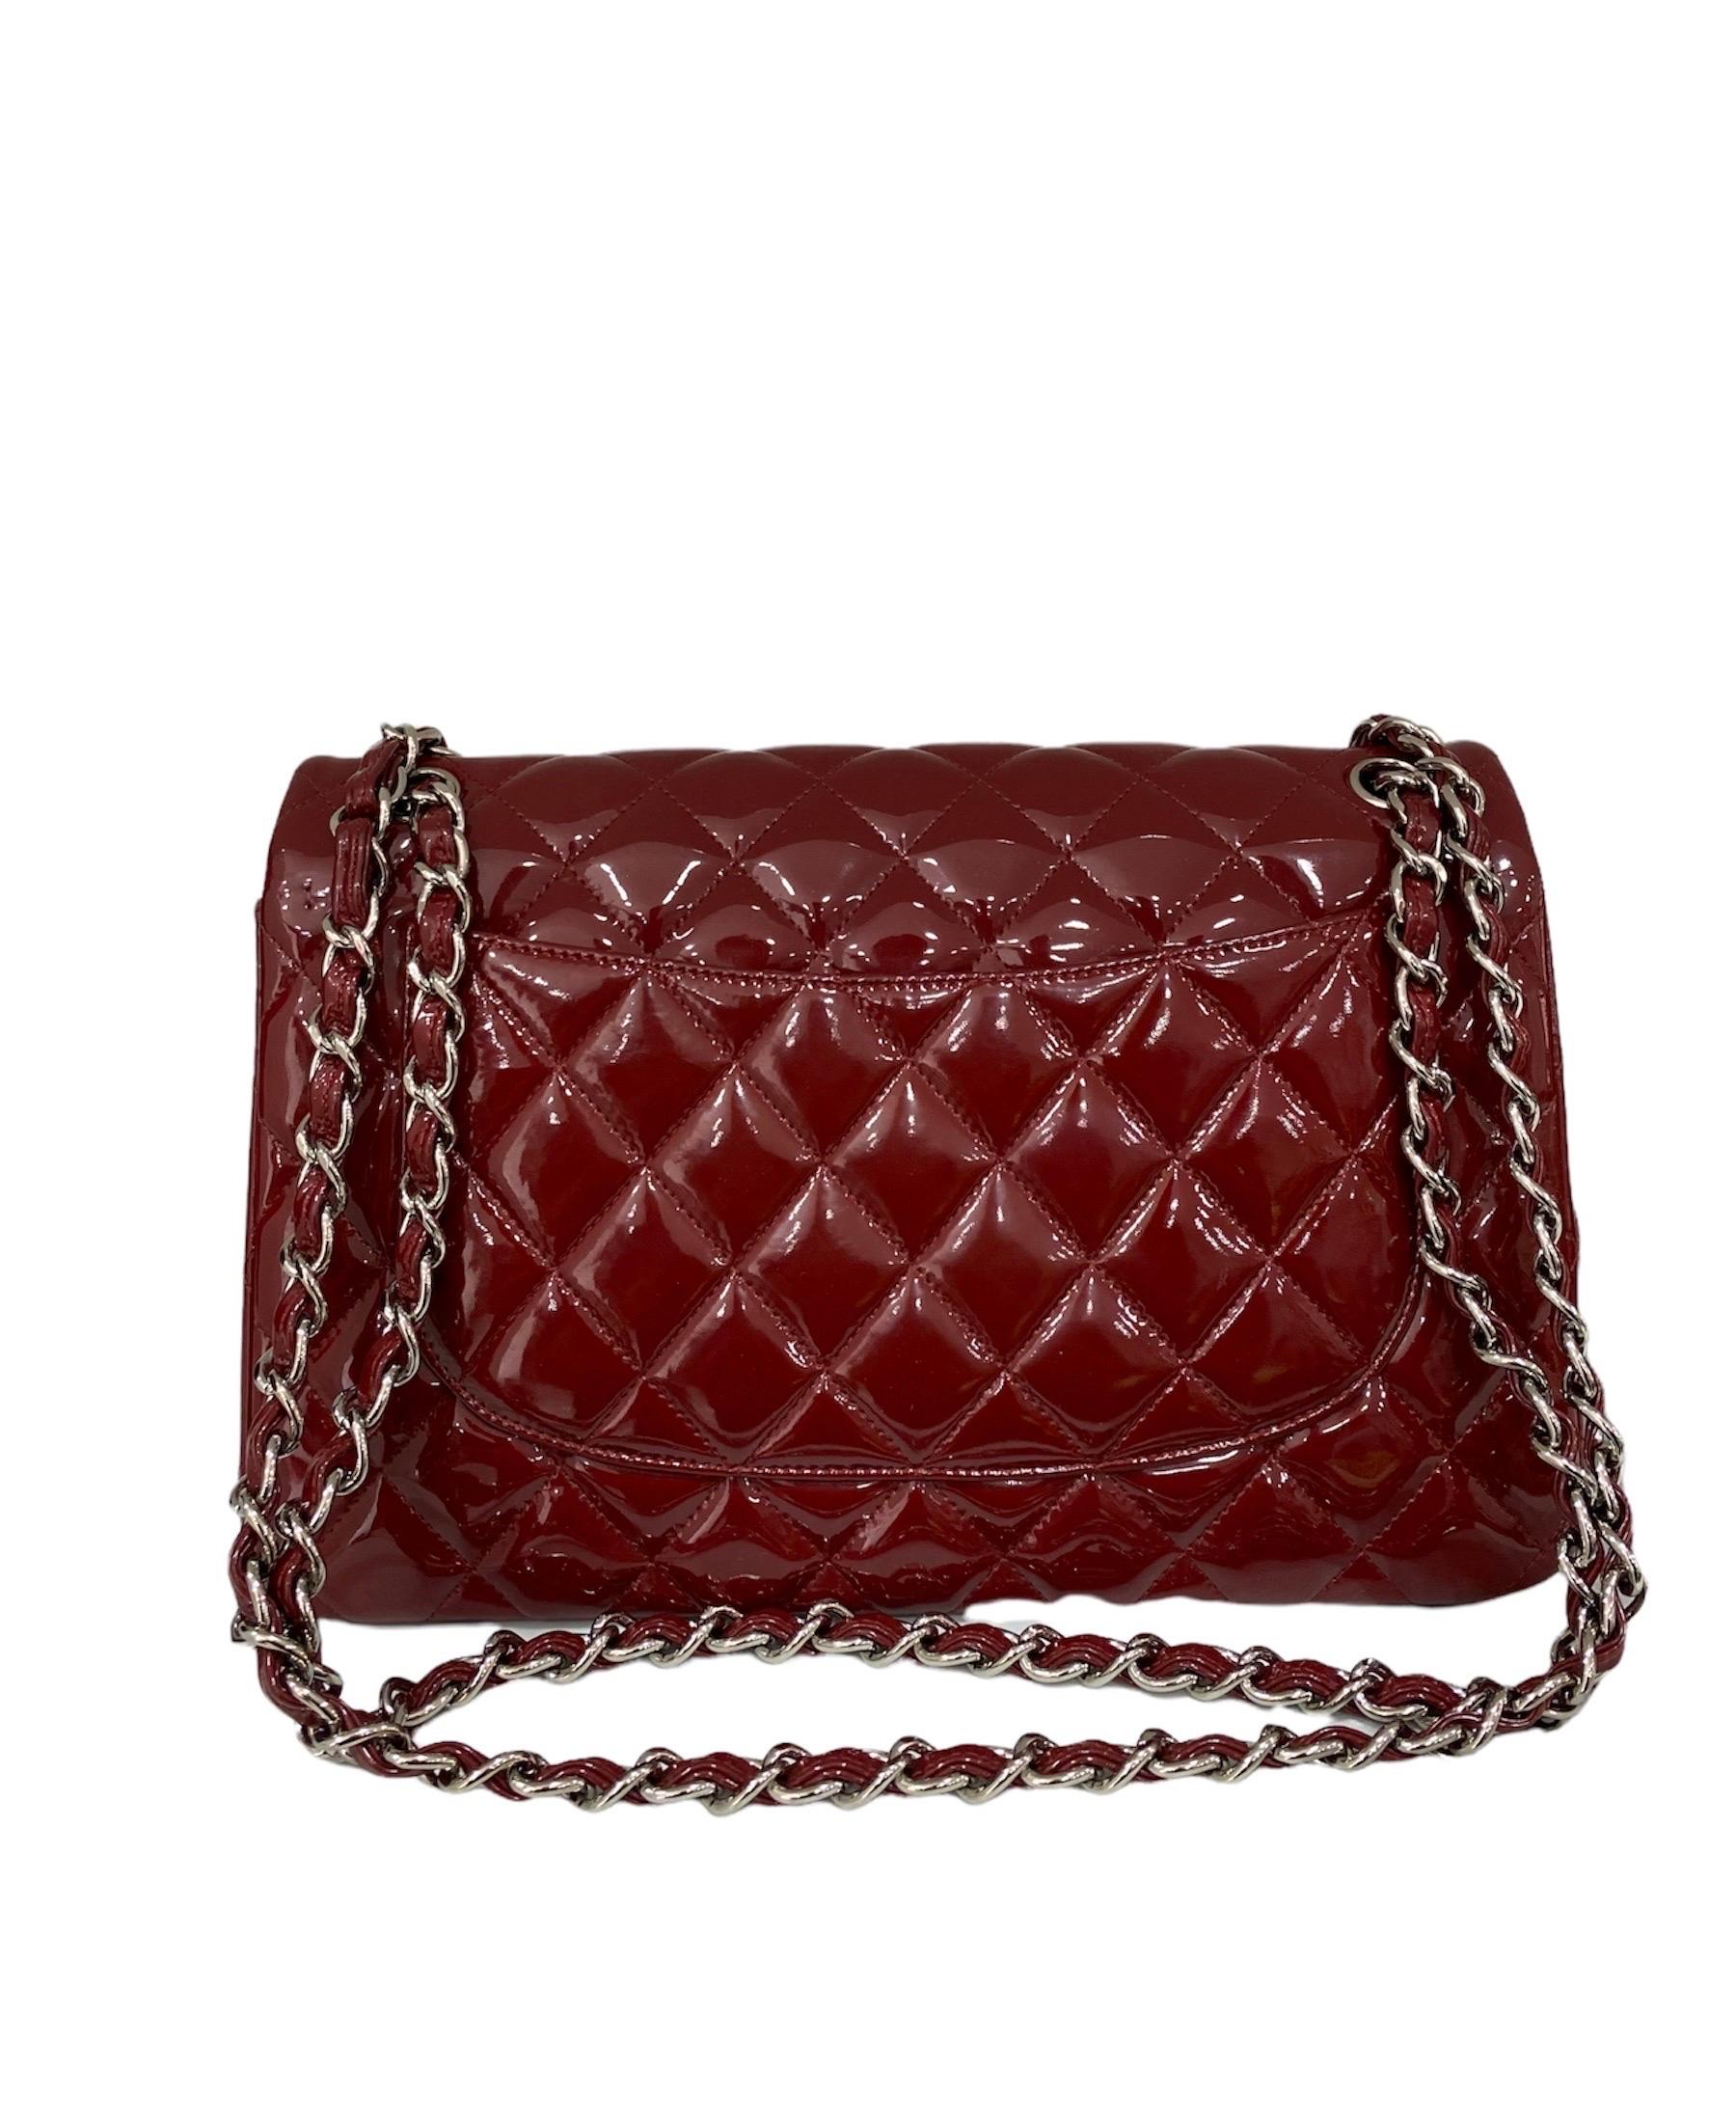 2011 Chanel Jumbo Red Vernis Shoulder Bag 1